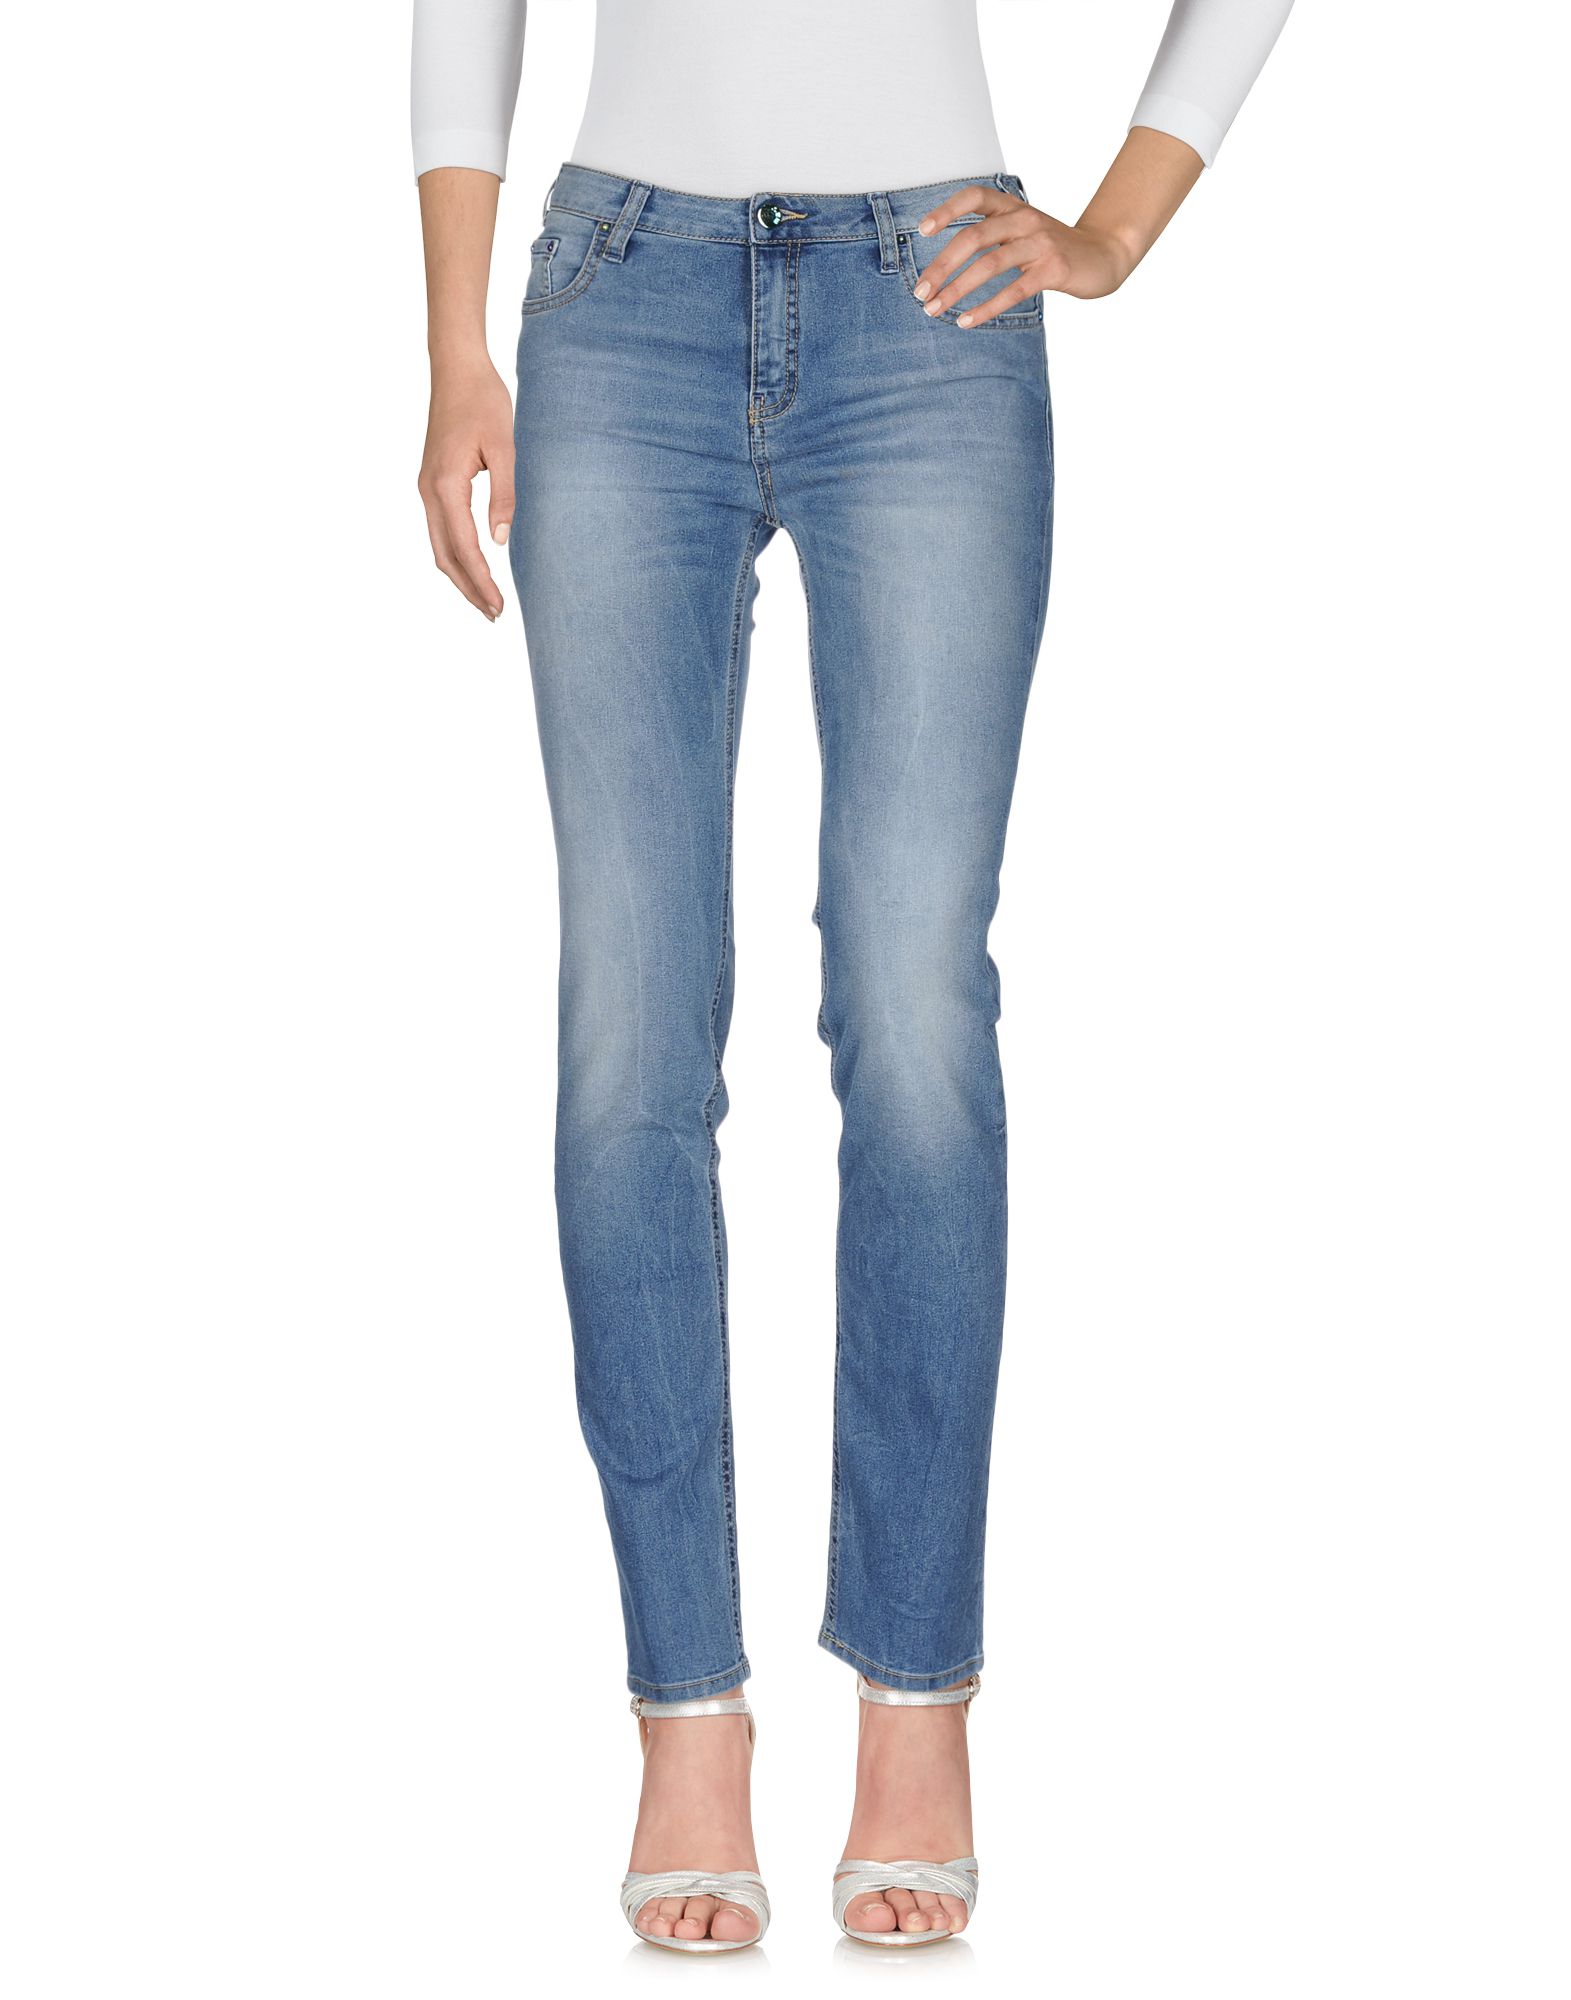 MET JEANSMET JEANS Jeans | DailyMail